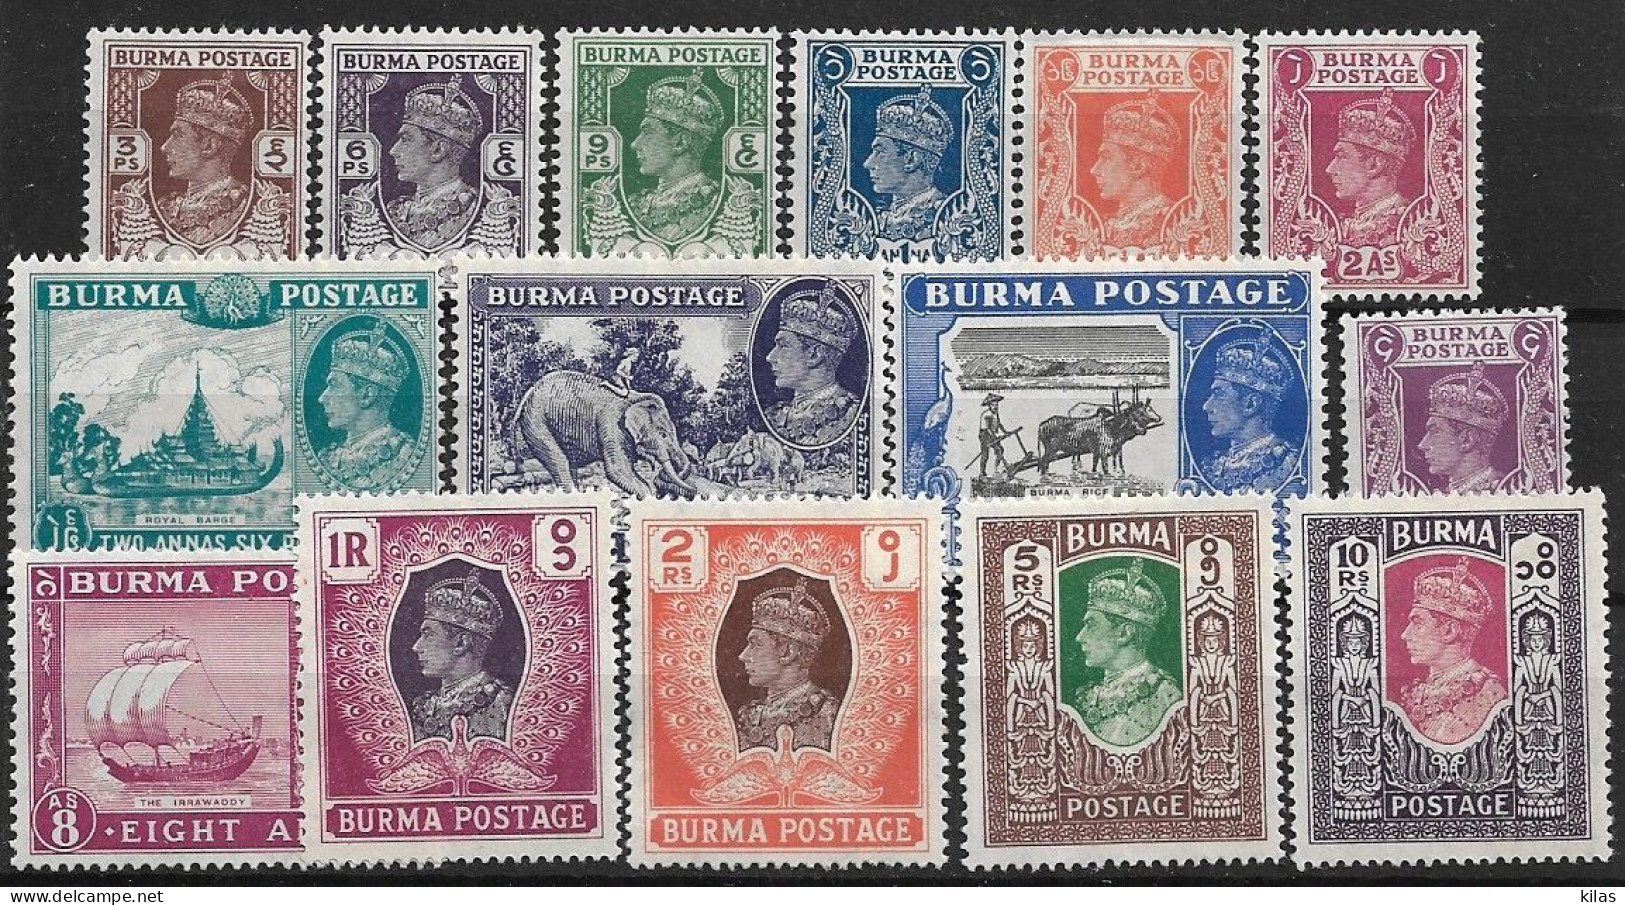 BURMA (BIRMANIE) 1947 KING GEORGE V MH - Birmanie (...-1947)